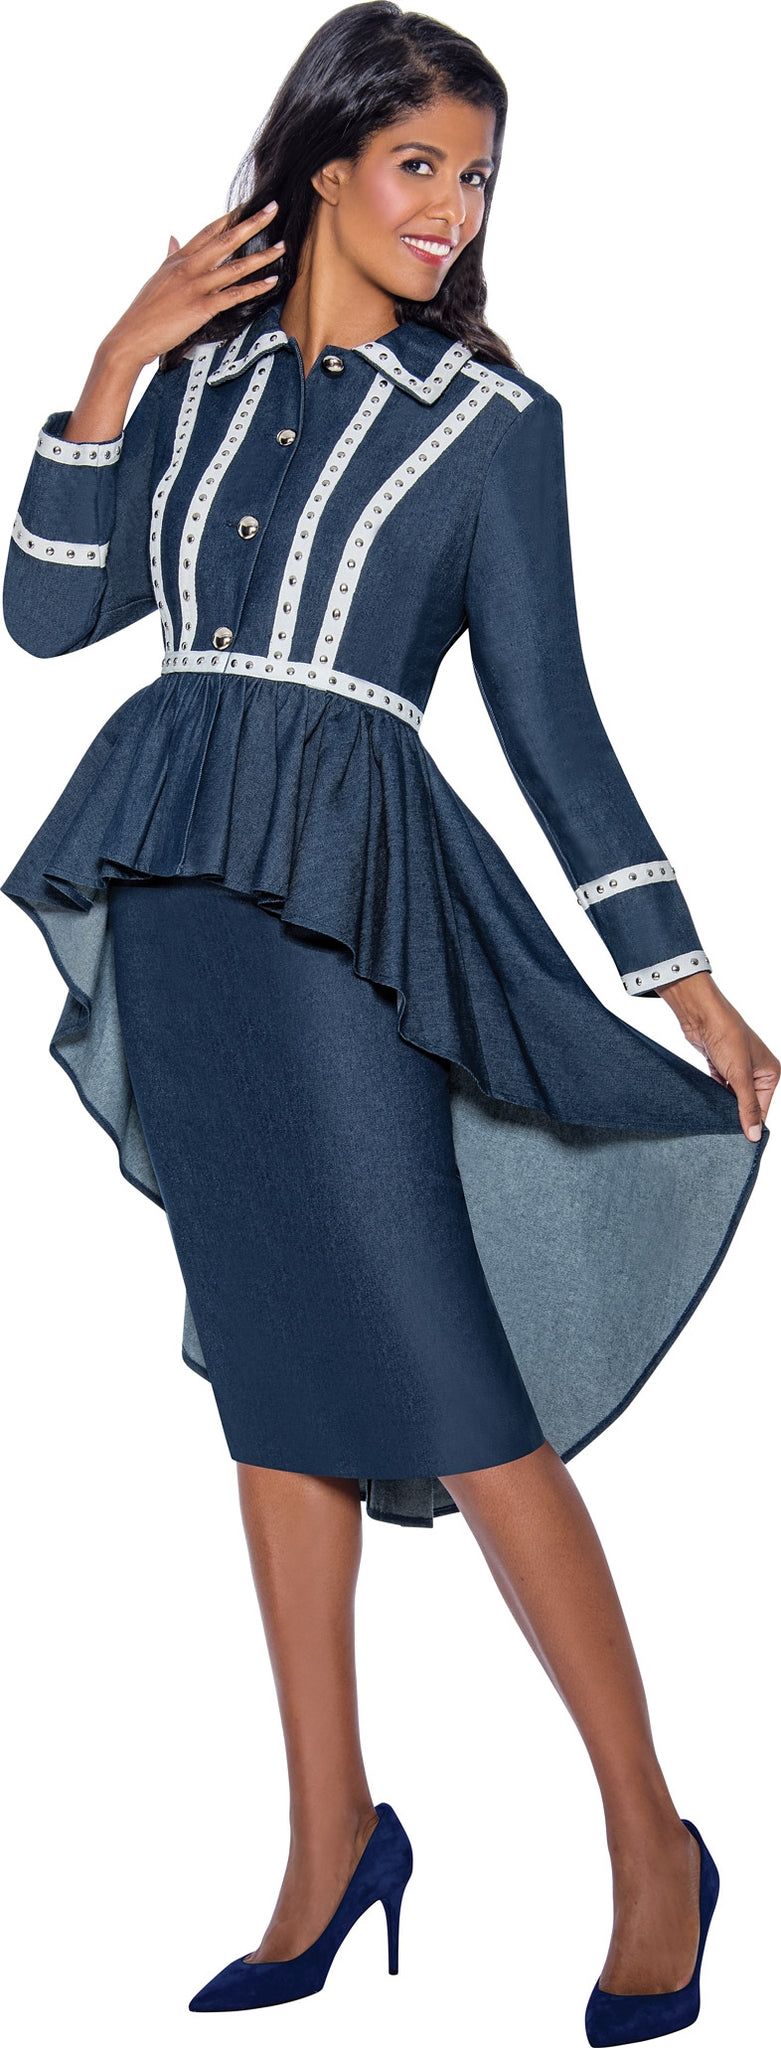 Devine Sport Denim Skirt Suit 63772 - Church Suits For Less